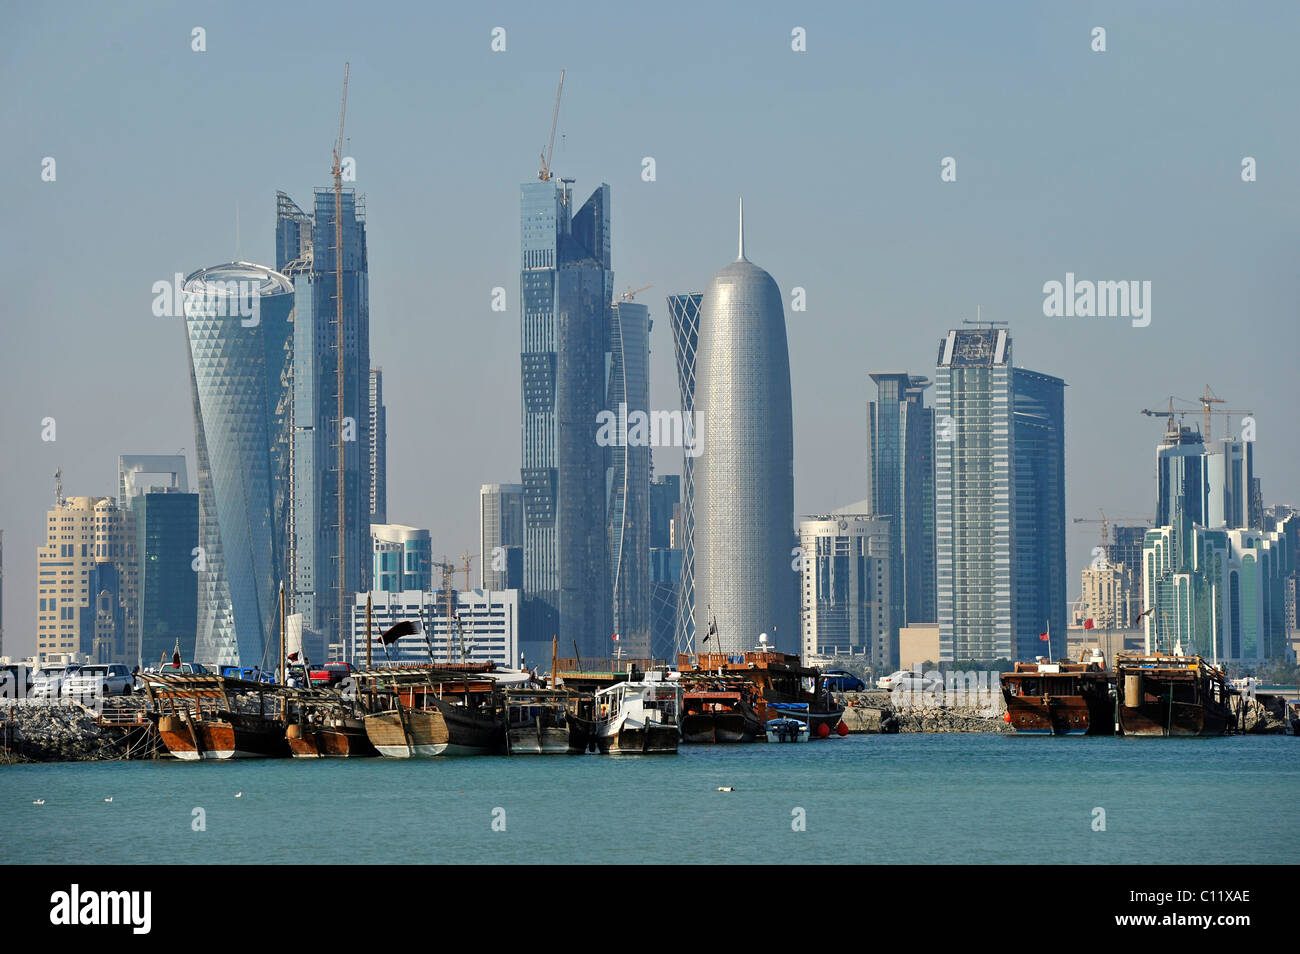 Tradizione e modernità, dhow di legno navi cargo nella parte anteriore della skyline di Doha, Qatar, Golfo Persico, Medio Oriente e Asia Foto Stock